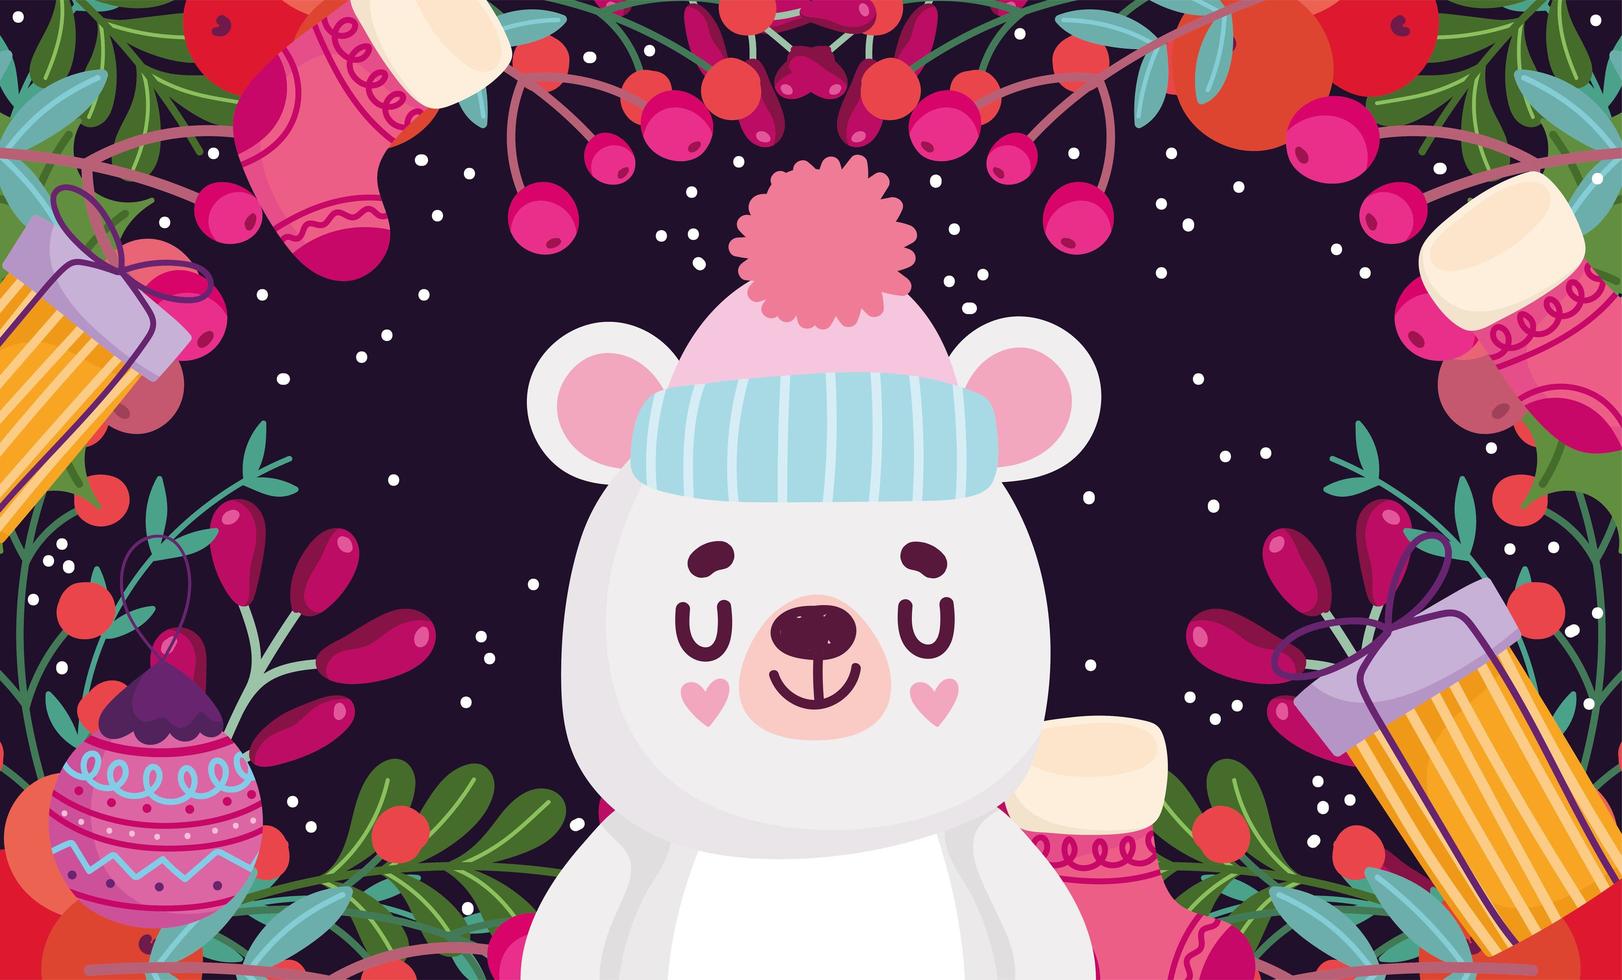 joyeux noël, ours mignon avec des boules de chaussettes cadeaux et carte de décoration de feuillage de baies de houx vecteur